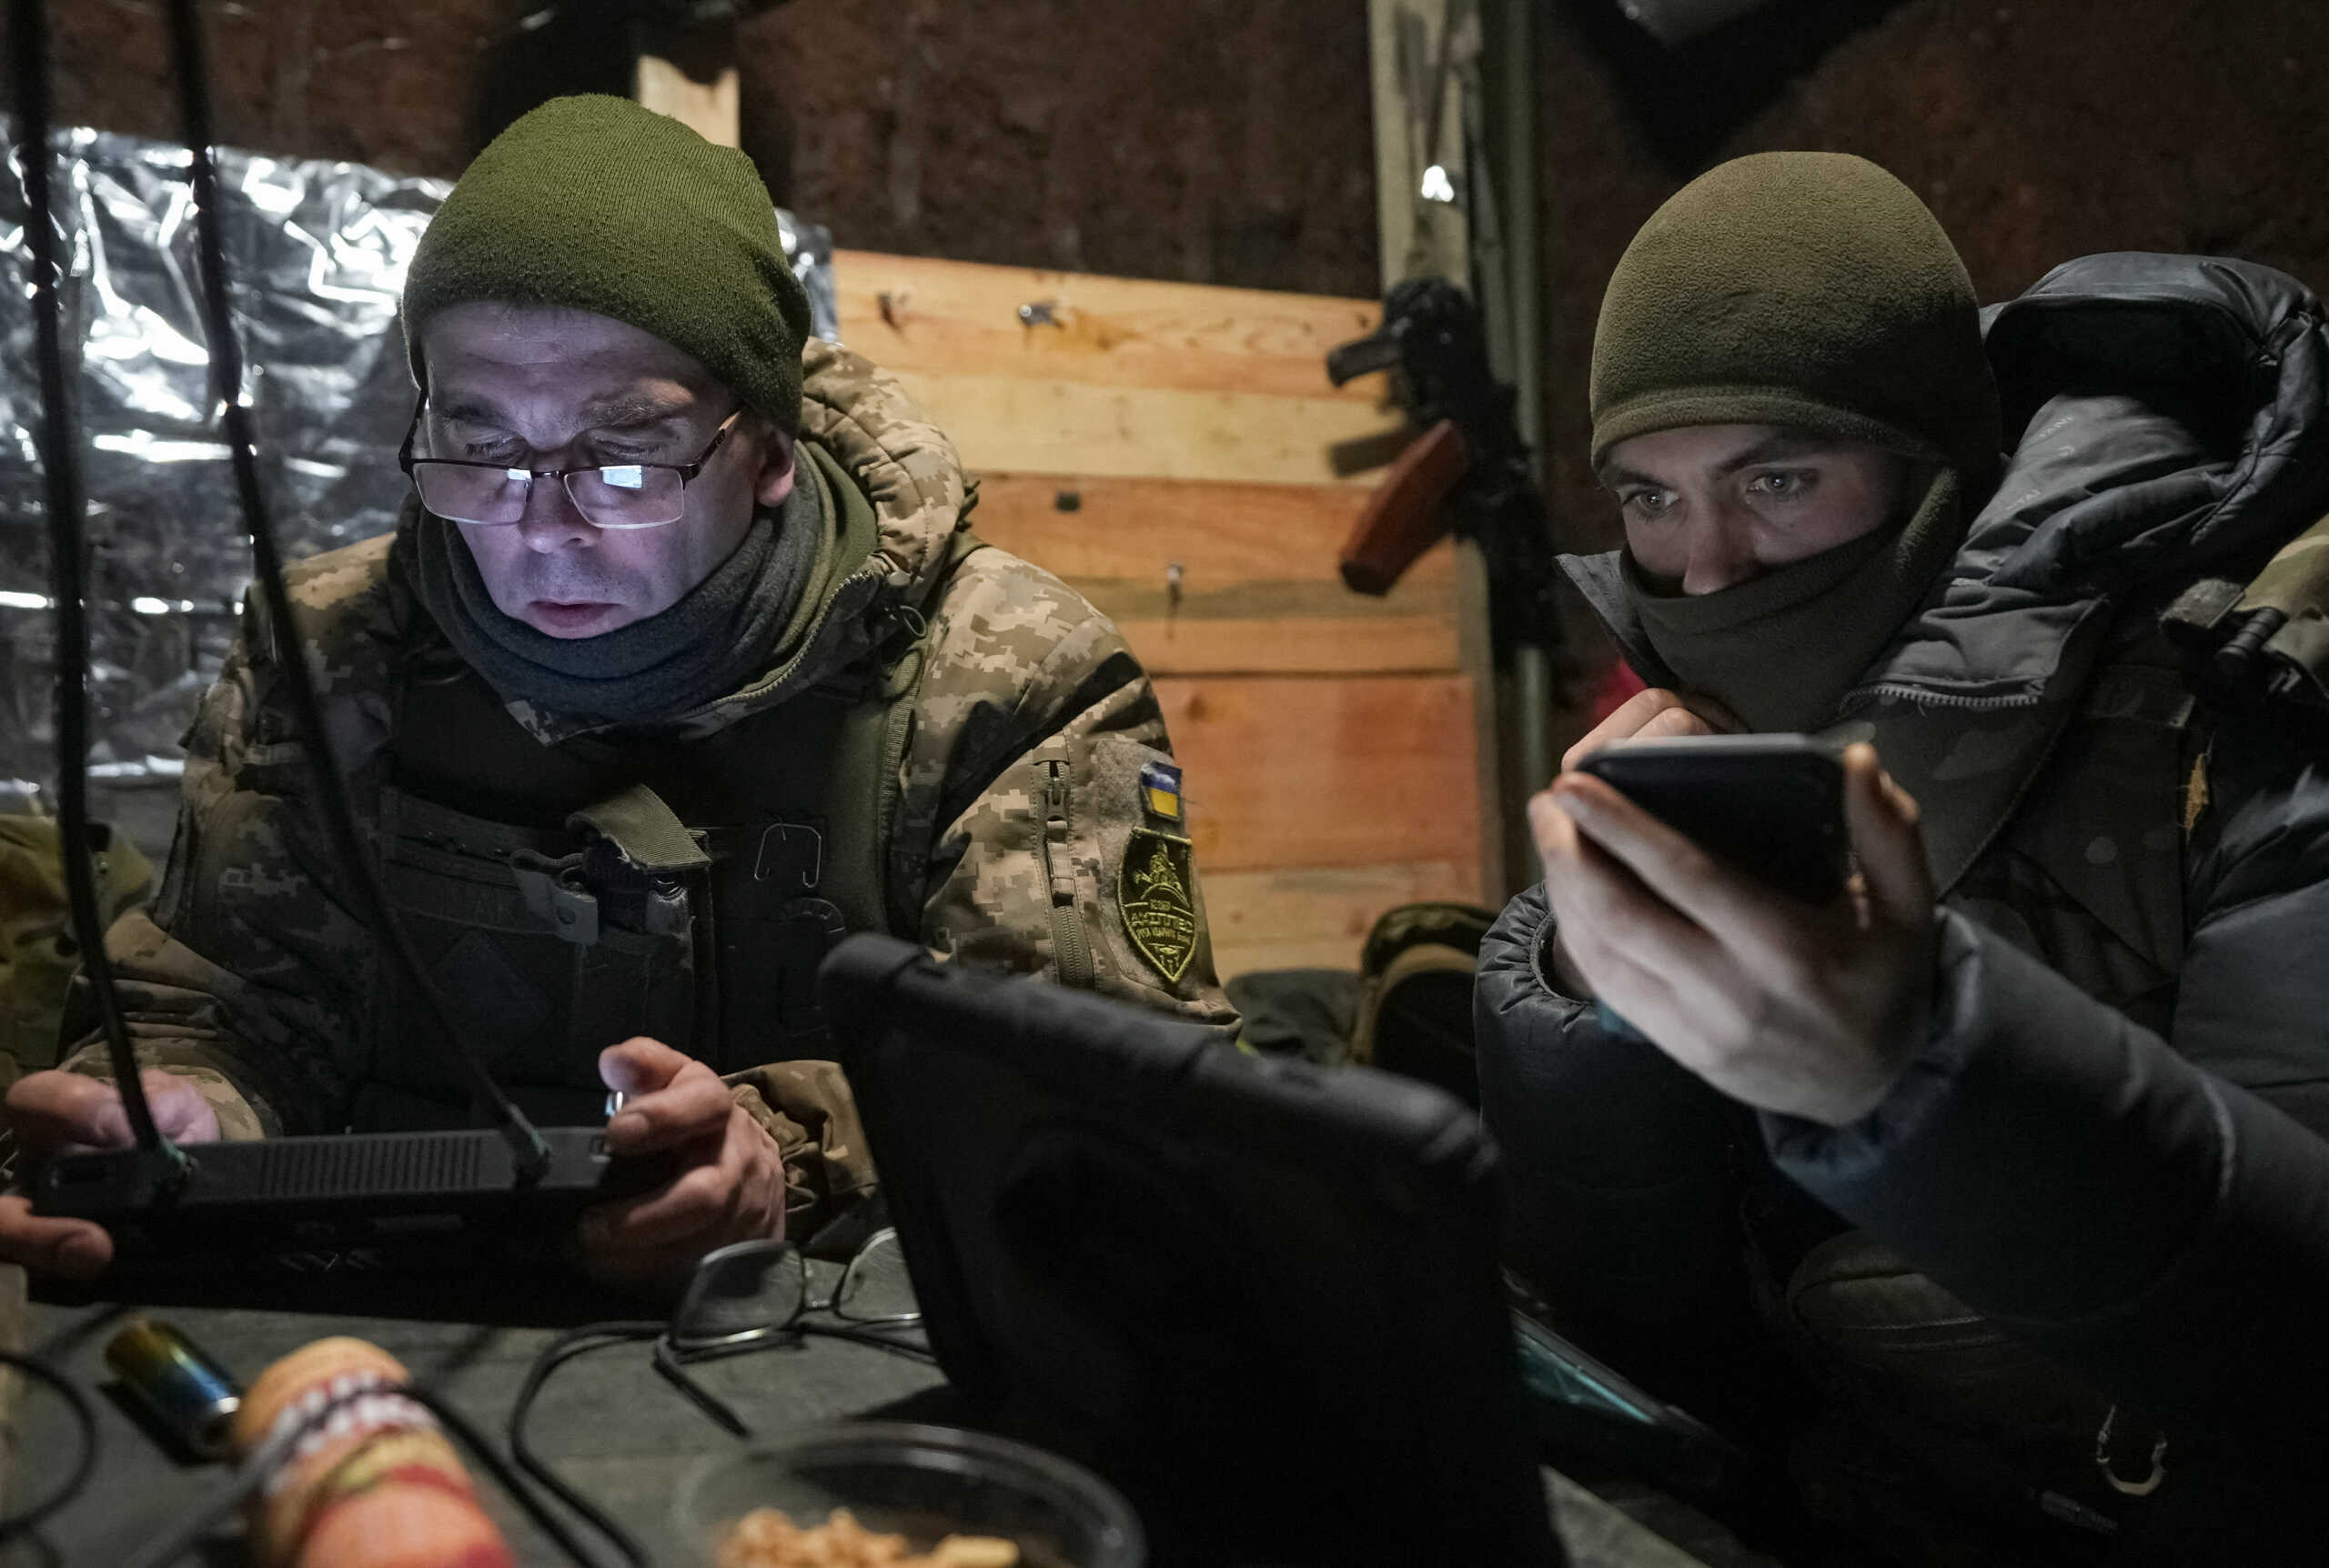 Οι ουκρανικές αρχές ανακοίνωσαν ότι εξάρθρωσαν δίκτυο Ρώσων κατασκόπων στην υπηρεσία πληροφοριών